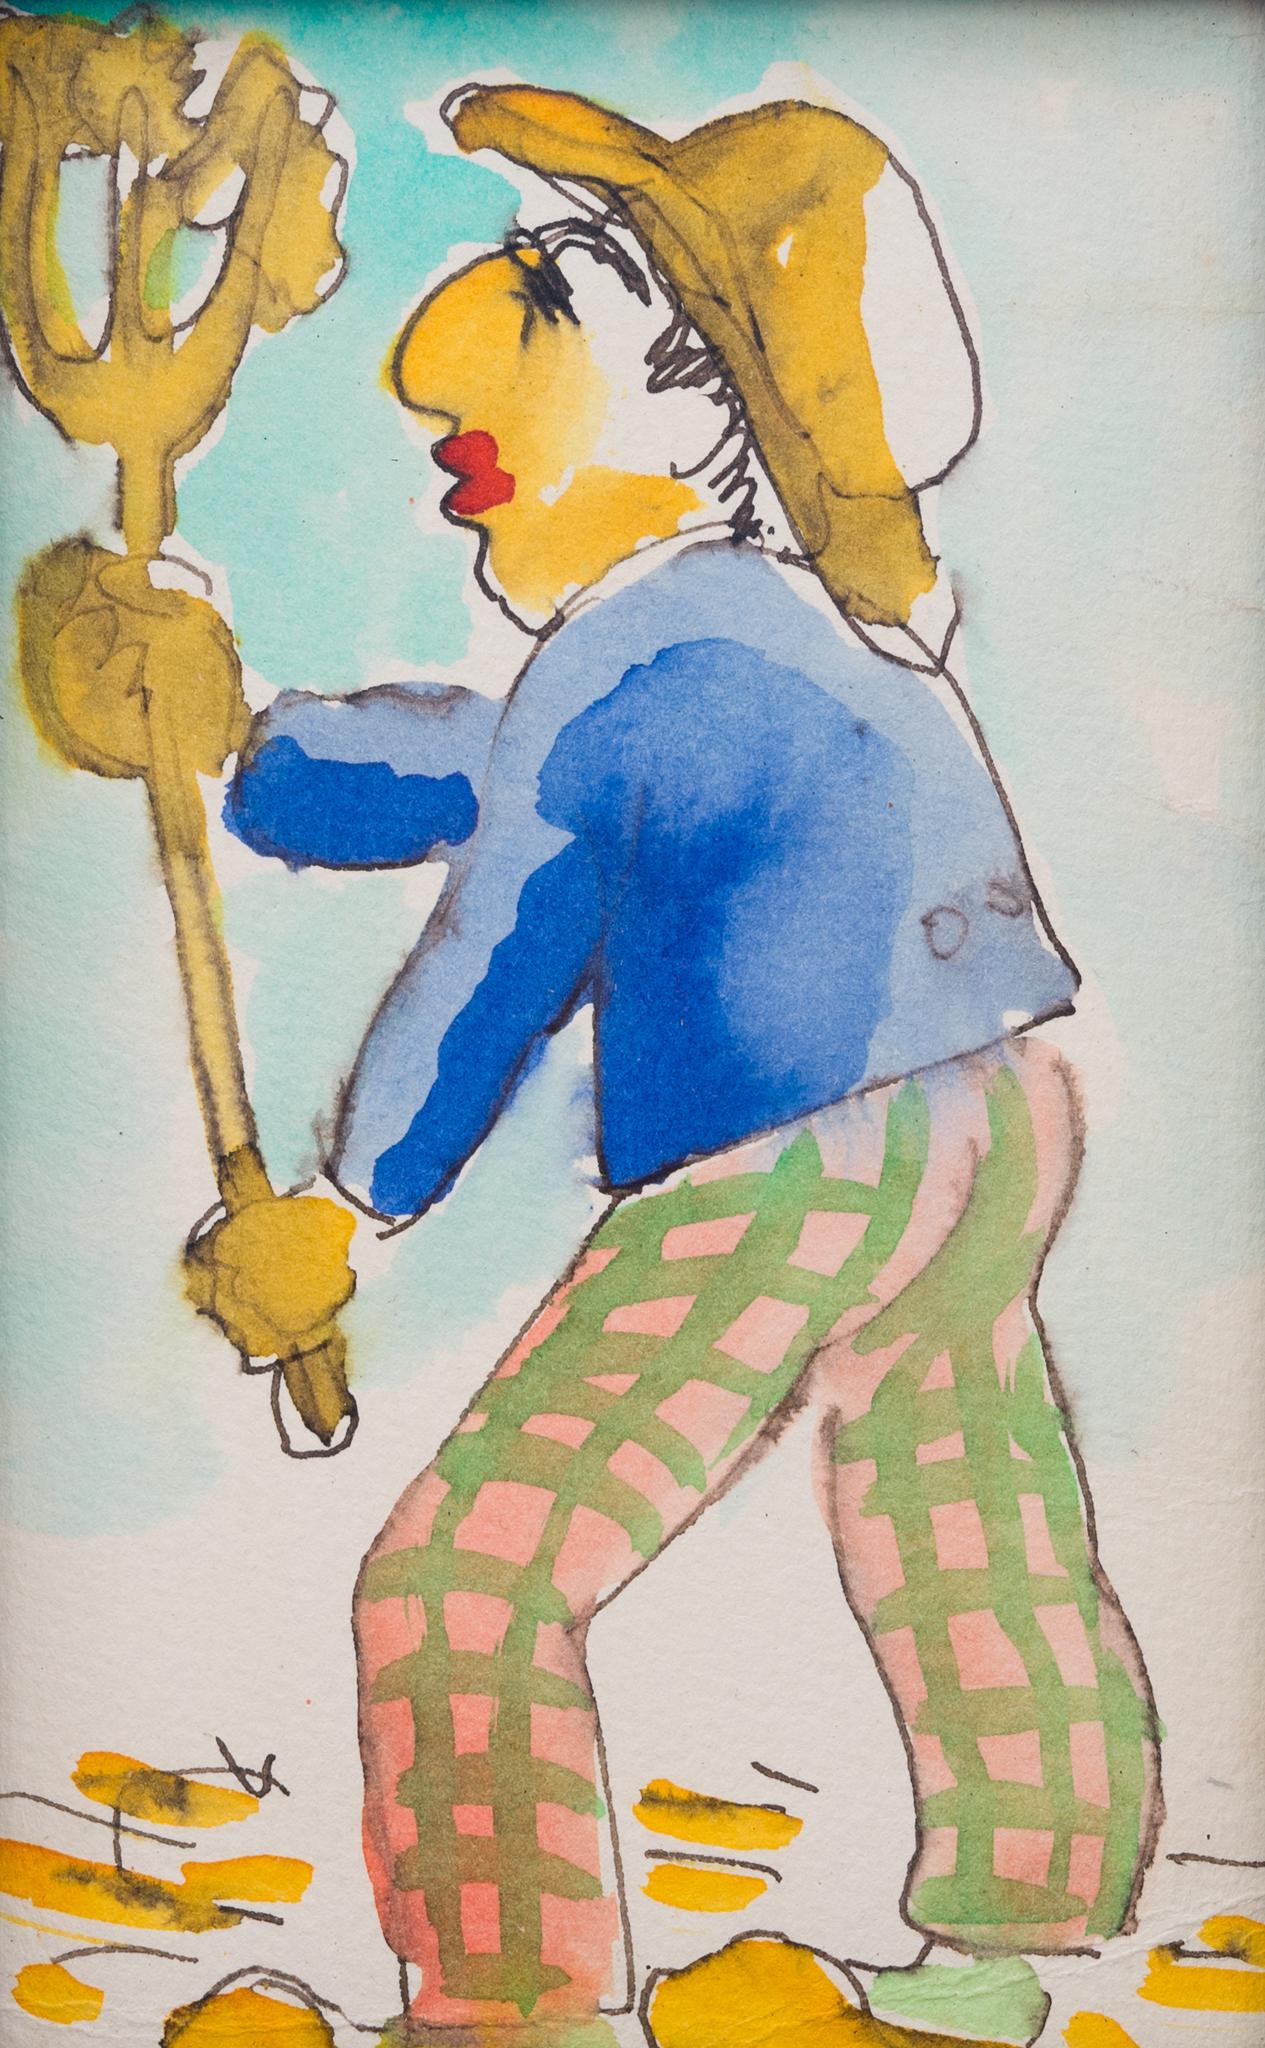 Postkartenplakat mit der Darstellung eines Bauern mit seiner dreizackigen Krüge – Art von Isaac Grünewald